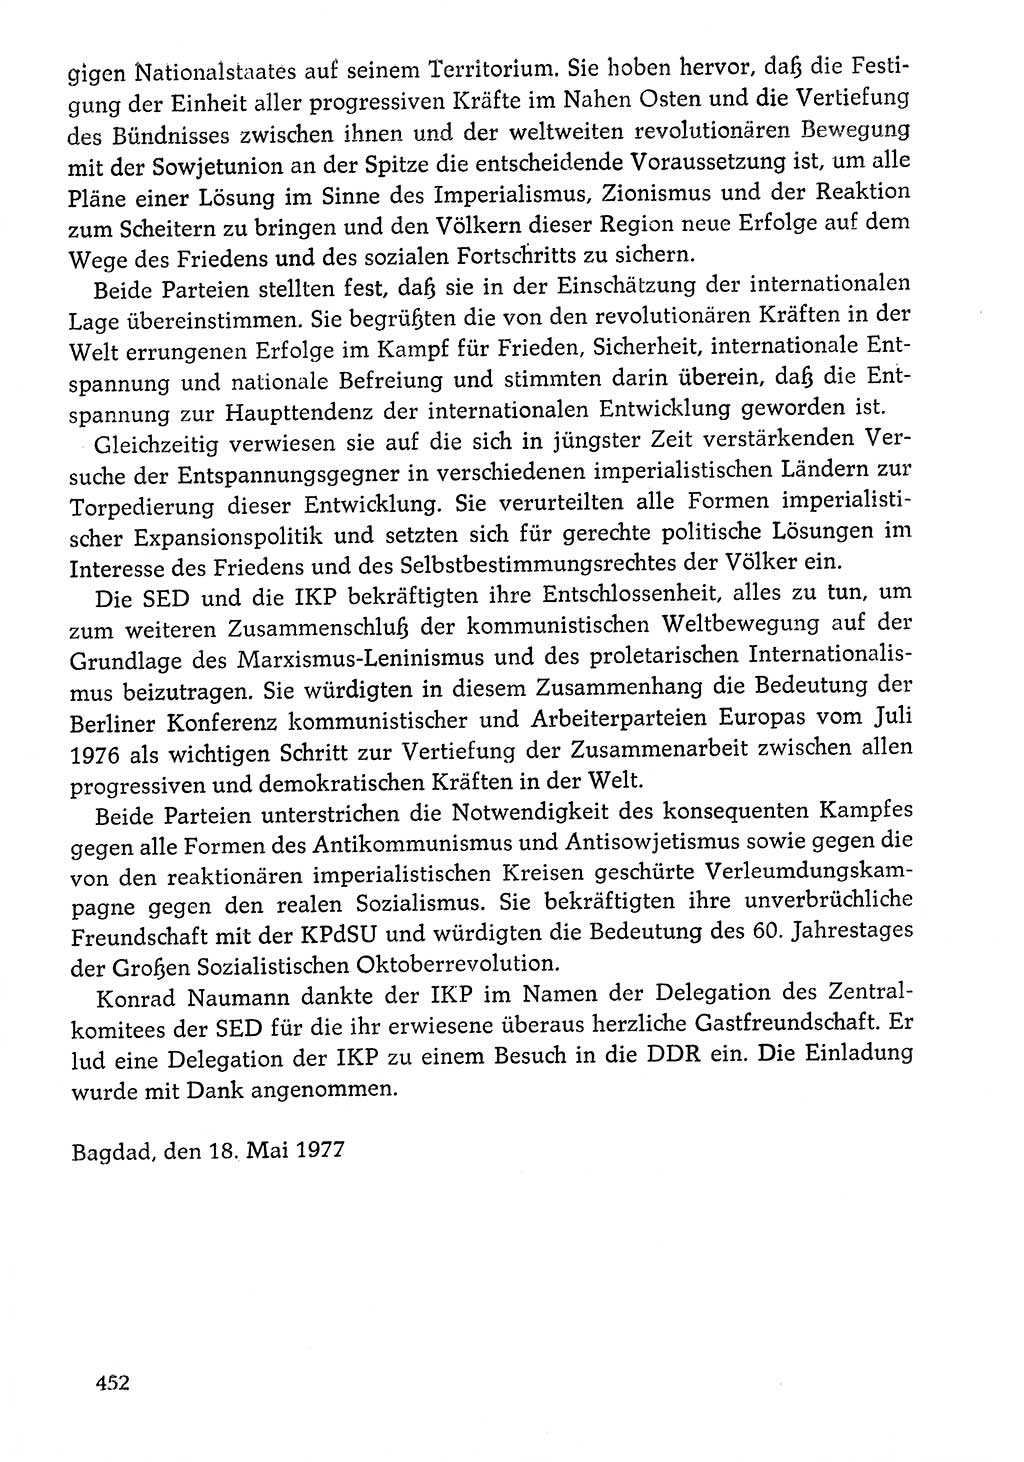 Dokumente der Sozialistischen Einheitspartei Deutschlands (SED) [Deutsche Demokratische Republik (DDR)] 1976-1977, Seite 452 (Dok. SED DDR 1976-1977, S. 452)